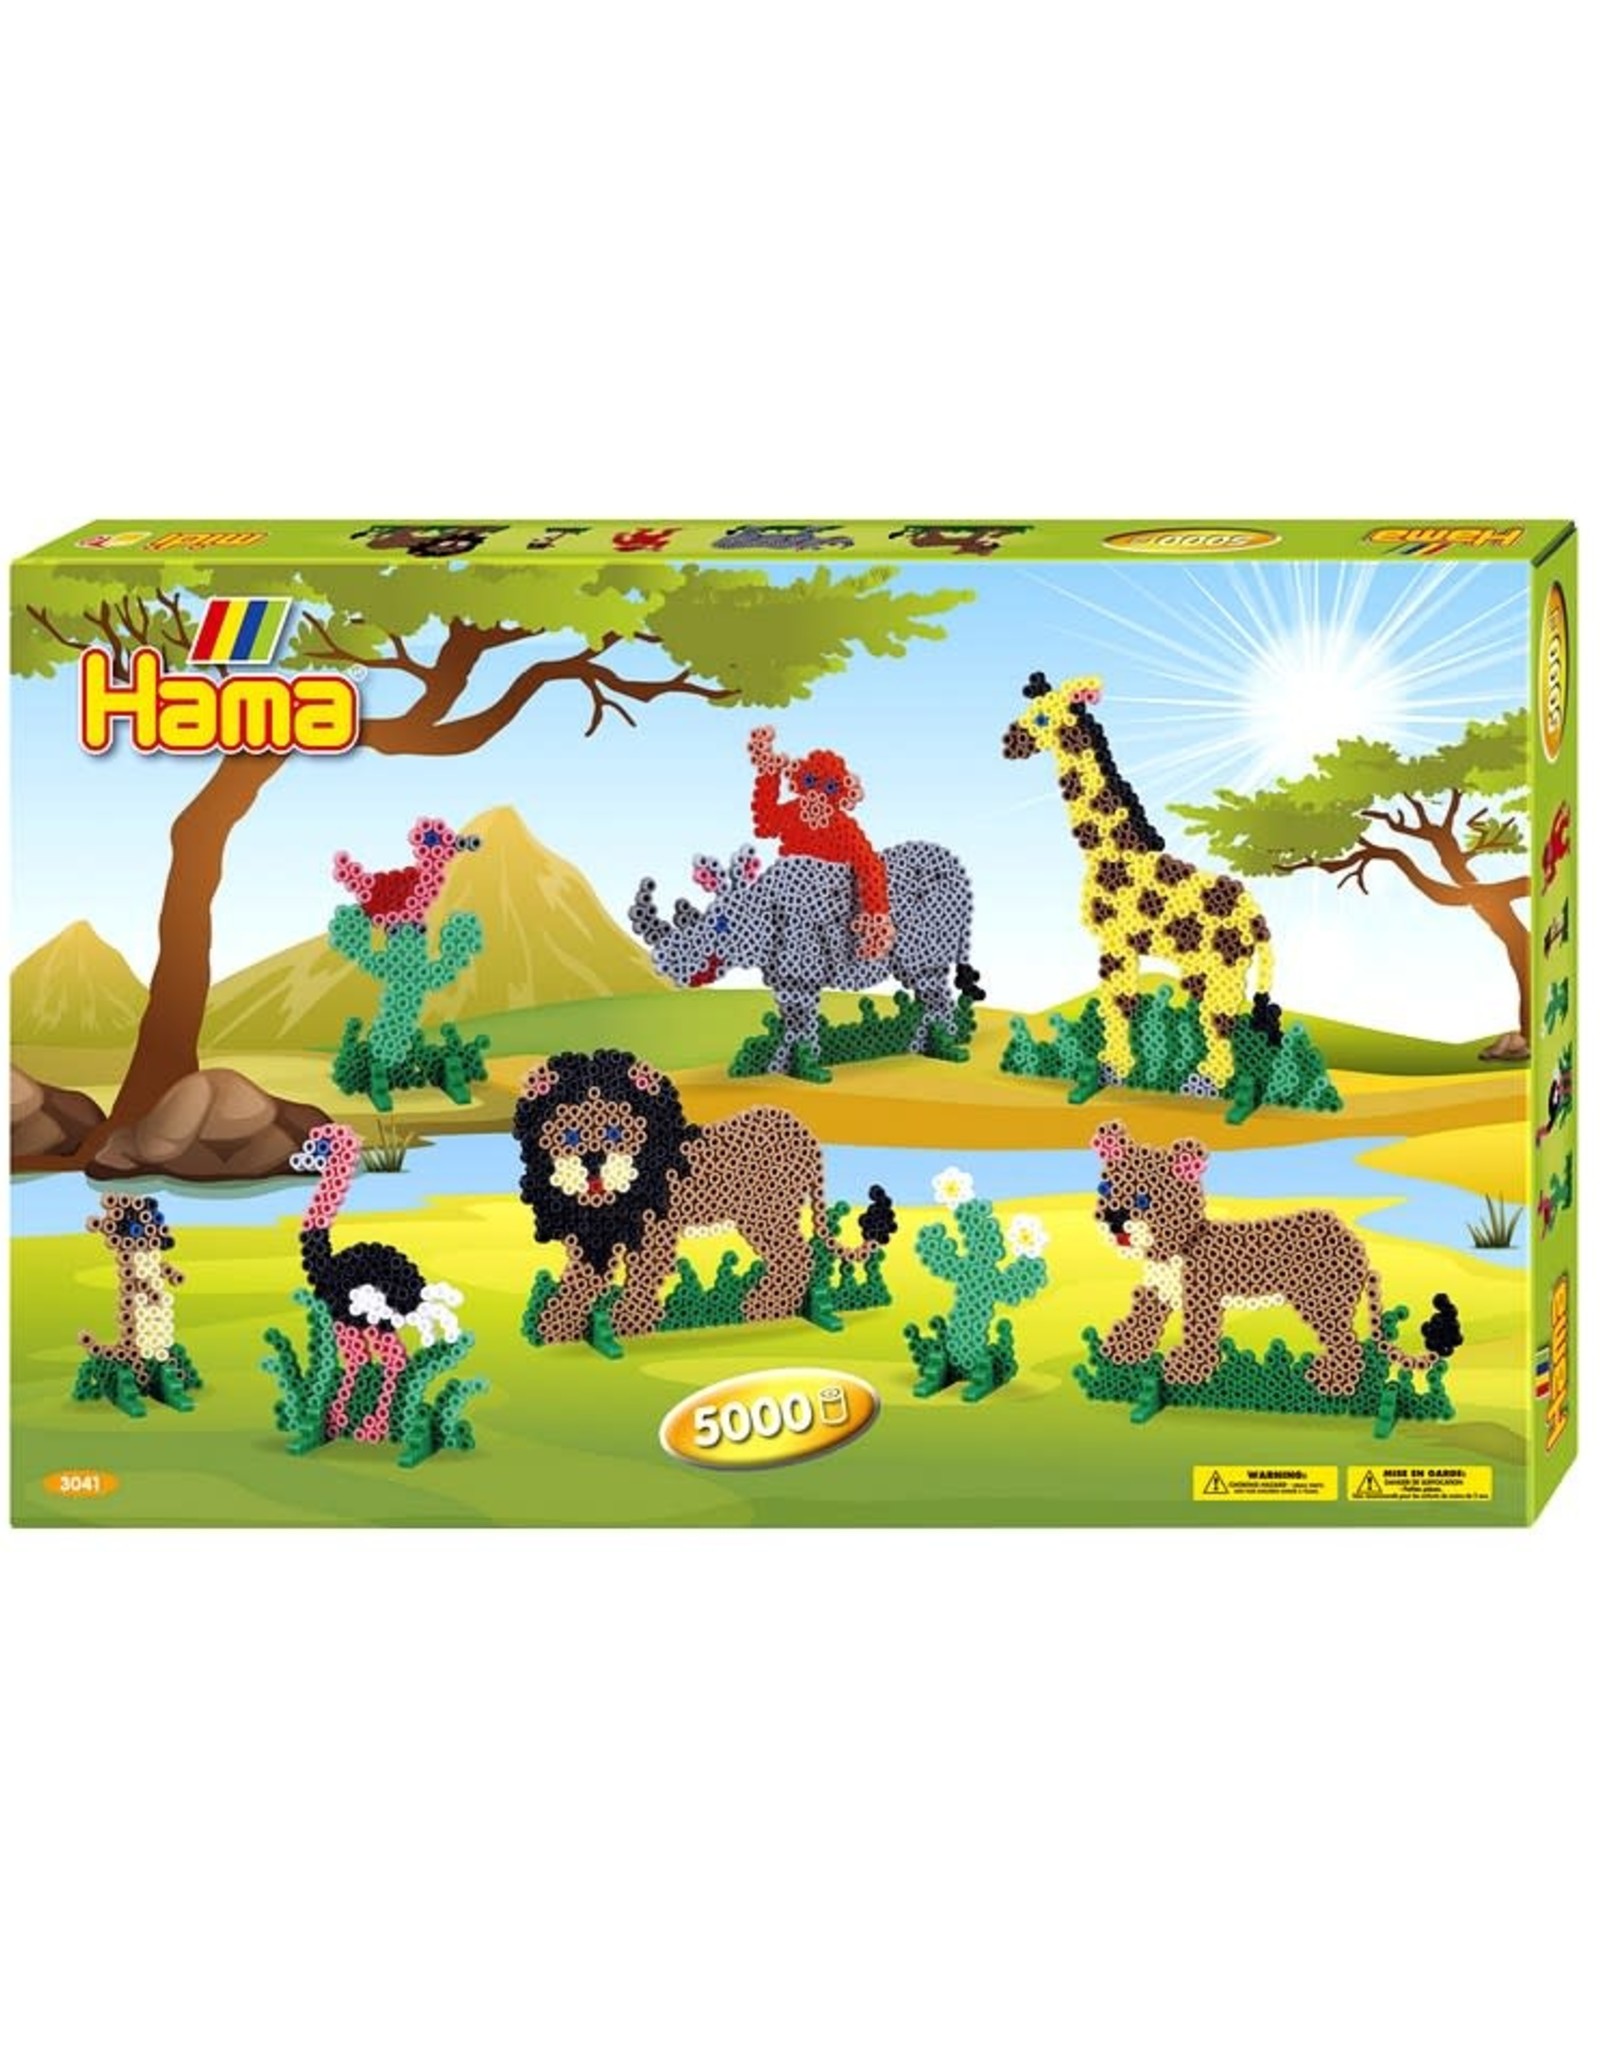 Hama Hama Beads Safari Gift Box - 5000 beads